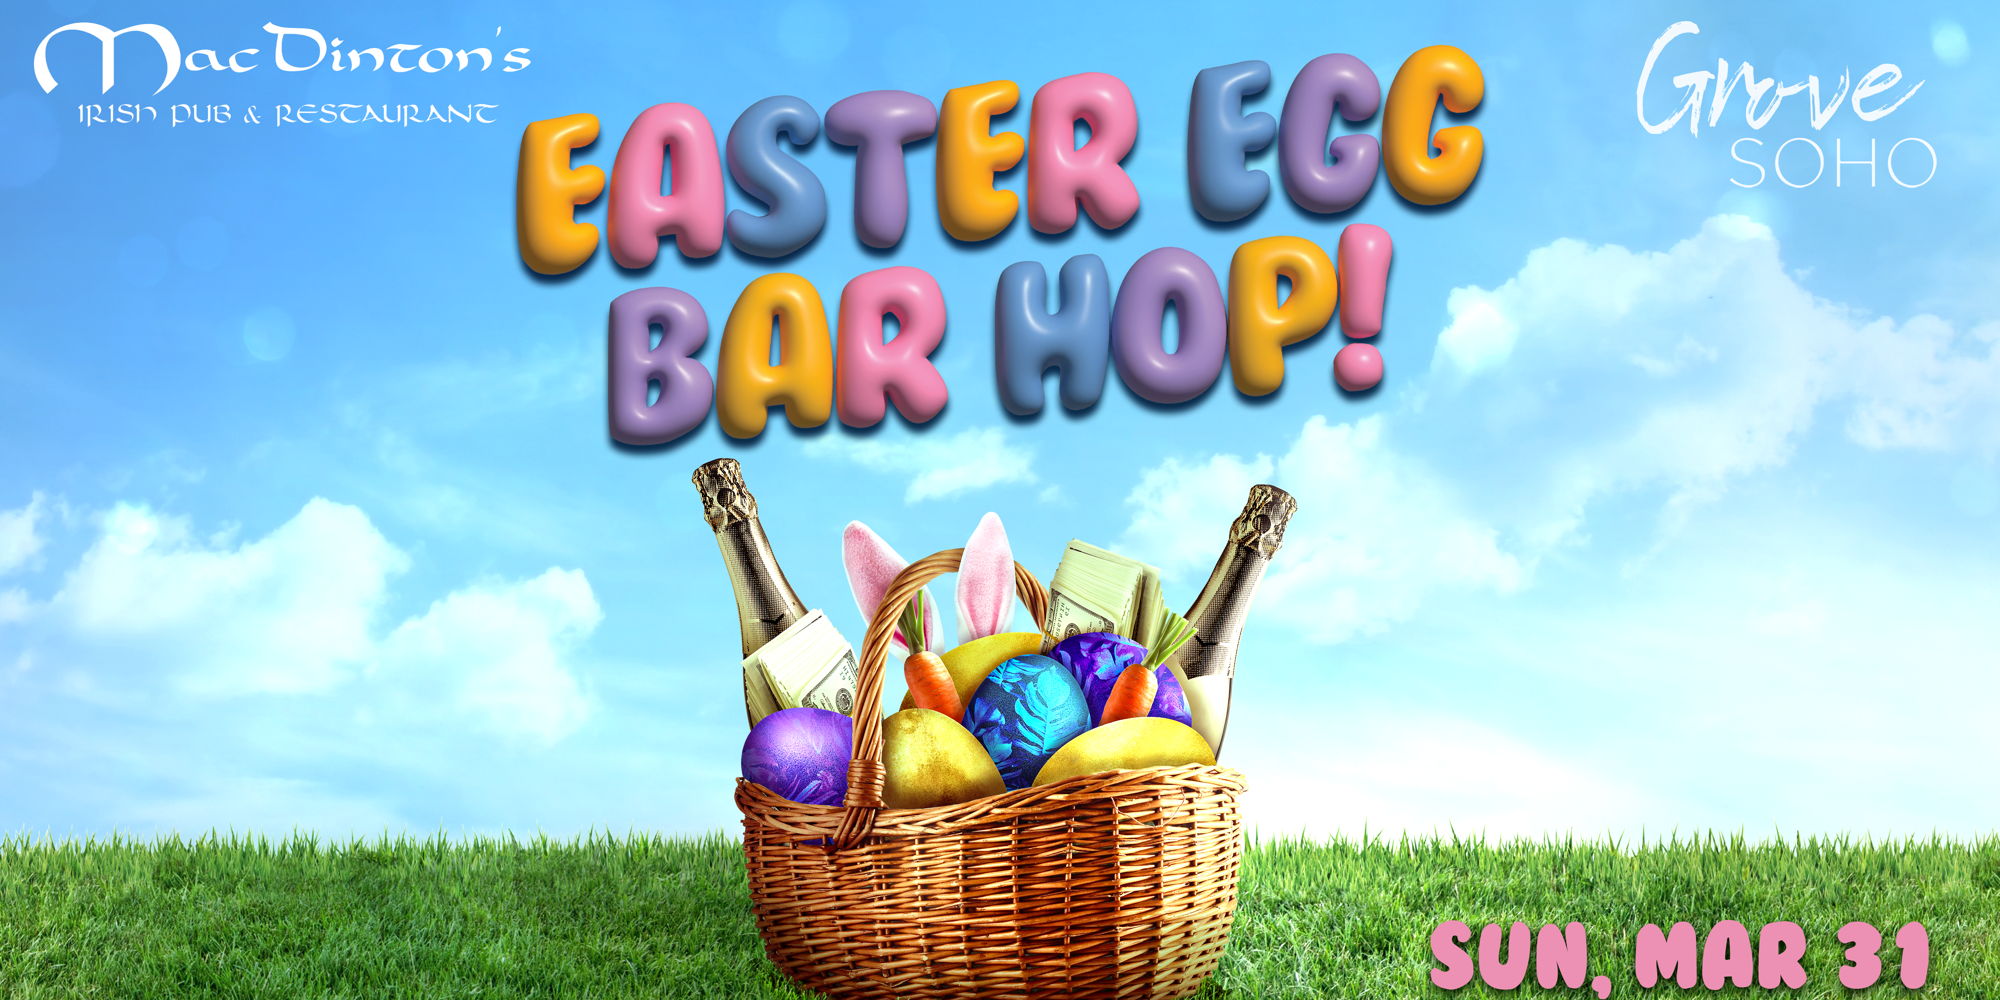 Easter Egg Bar Hop! promotional image